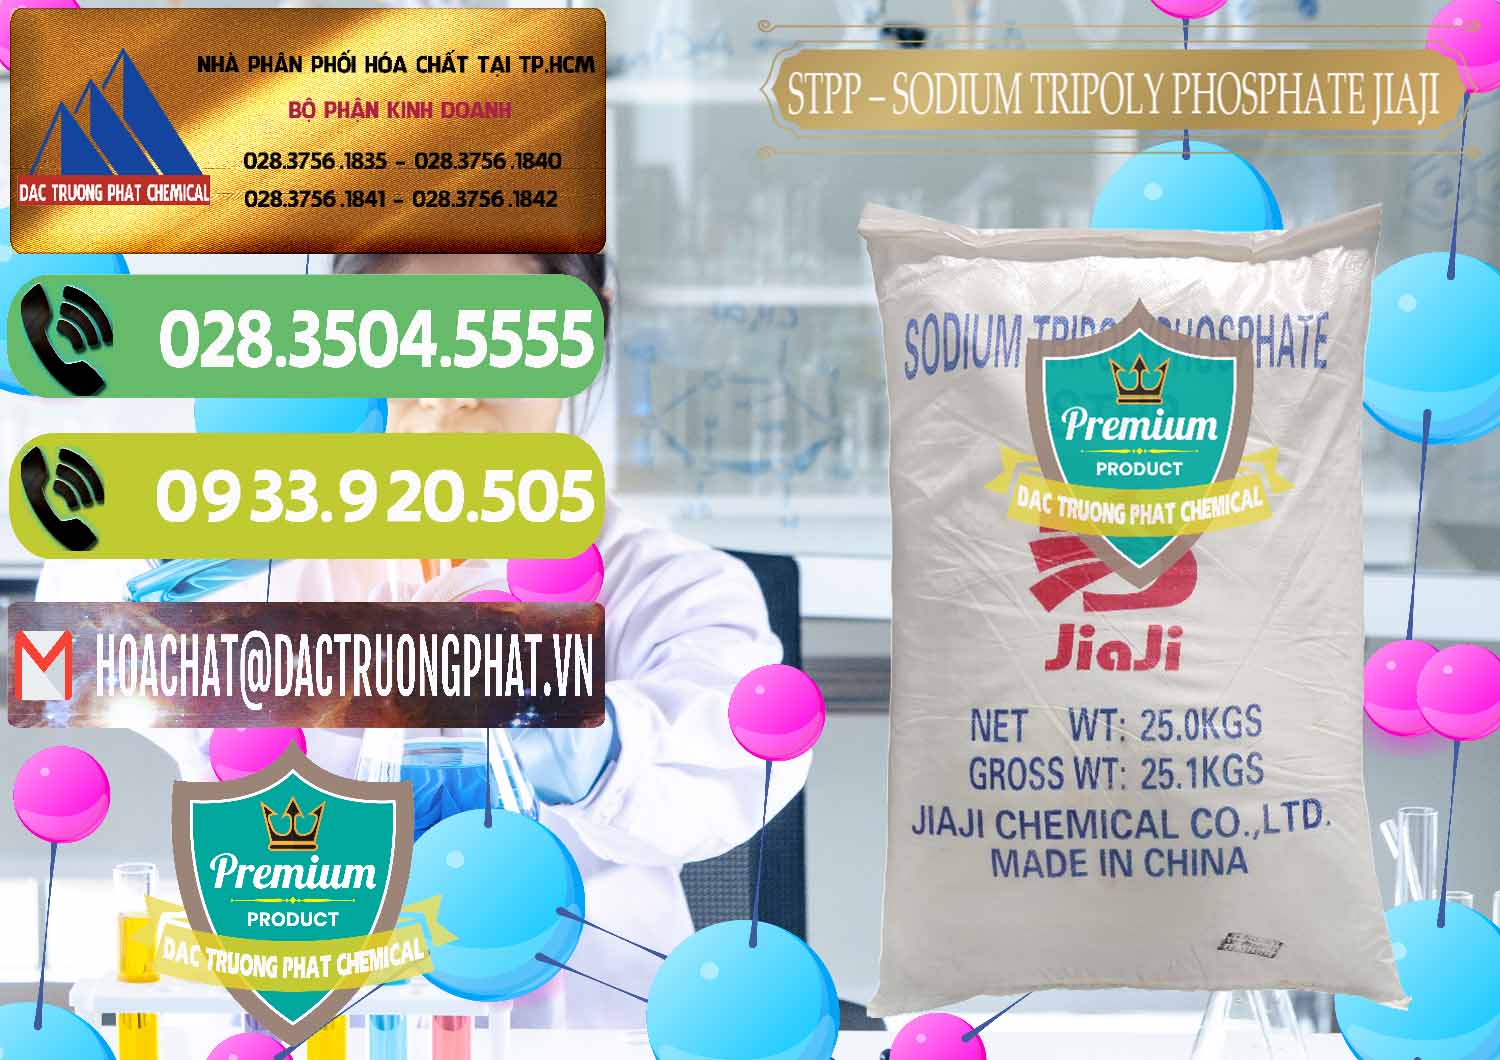 Nhập khẩu & bán Sodium Tripoly Phosphate - STPP Jiaji Trung Quốc China - 0154 - Cty nhập khẩu & phân phối hóa chất tại TP.HCM - hoachatmientay.vn